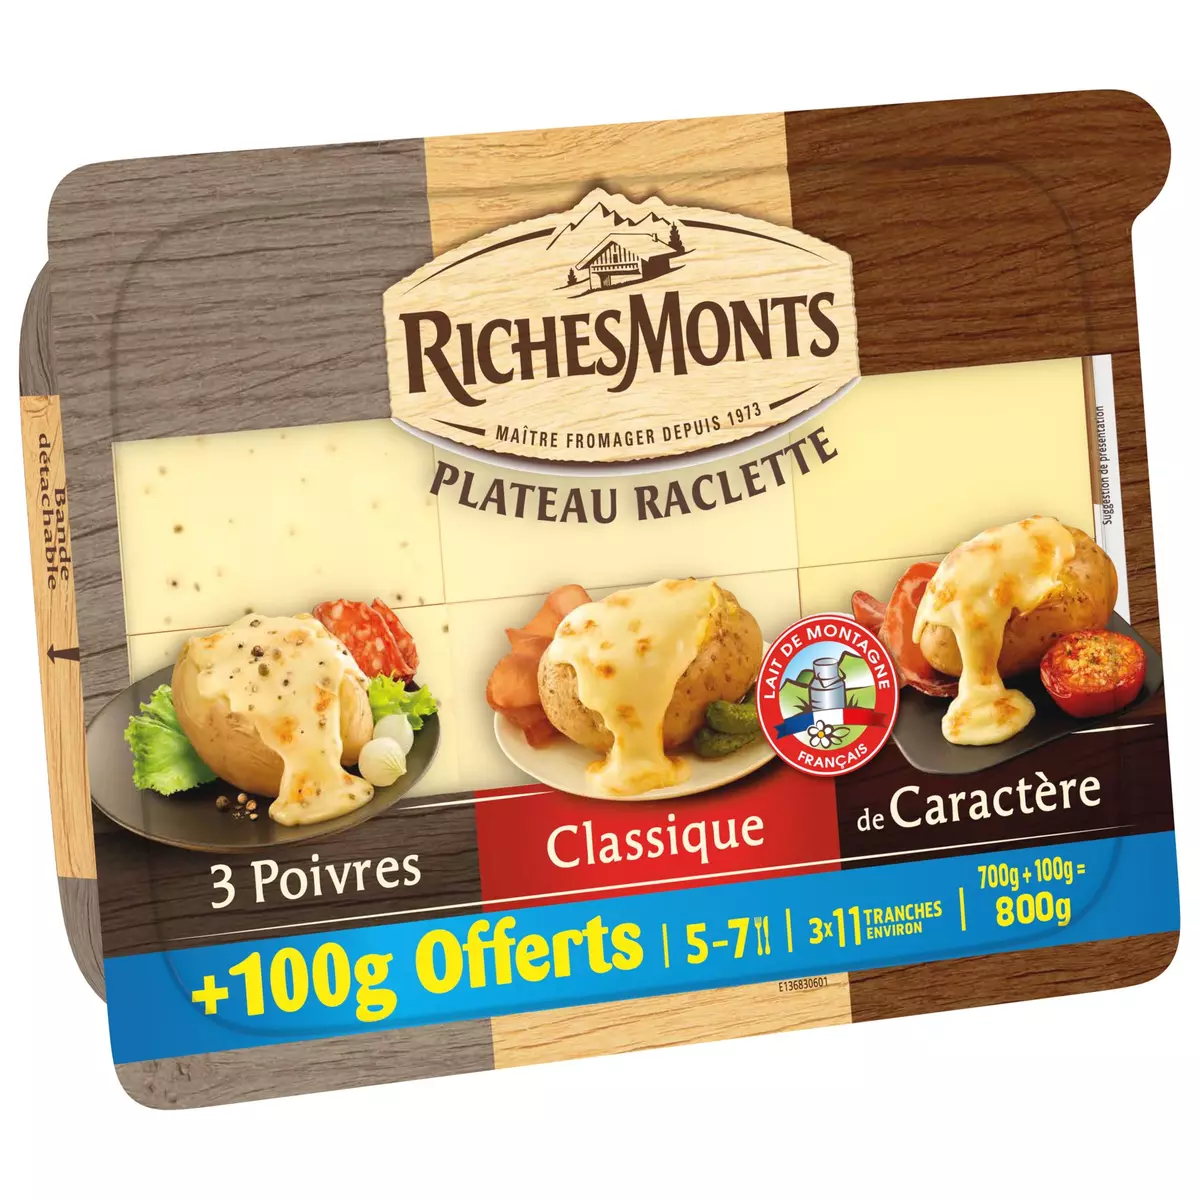 RICHESMONTS Plateau fromage à raclette 3 poivres classique de caractère 3x11 tranches 700g +100g offert